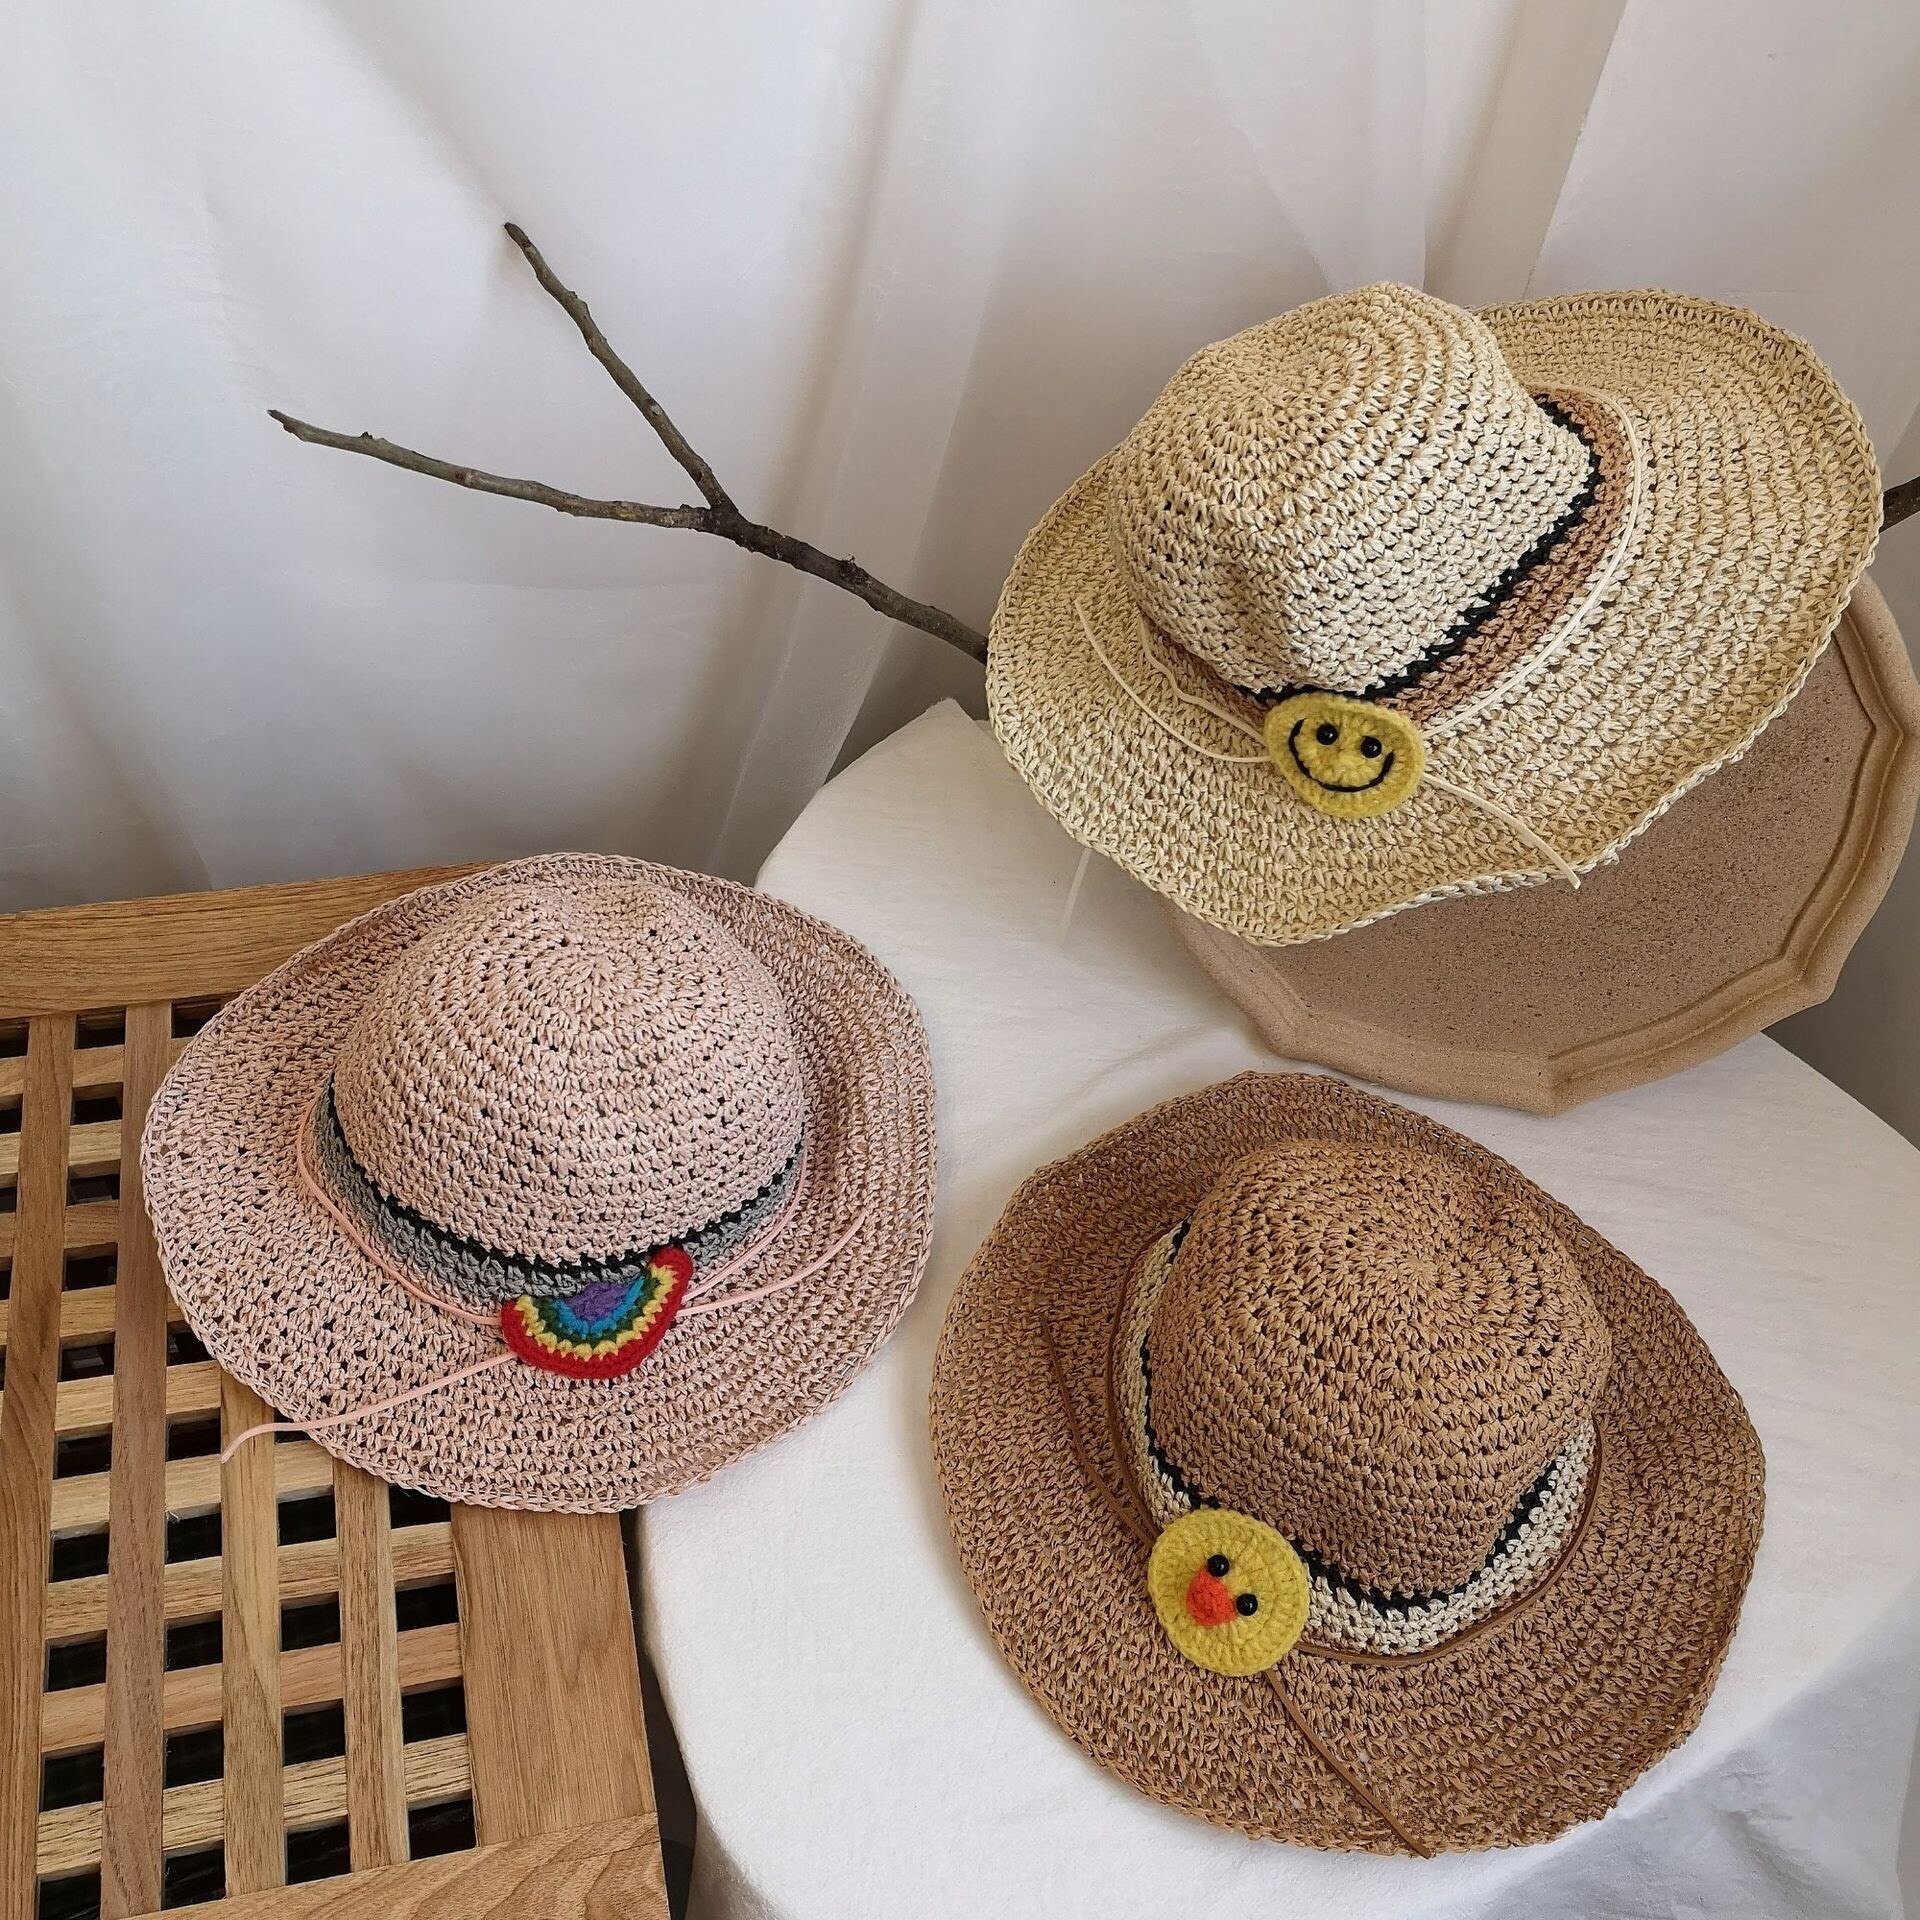 Цвет соломенной шляпы. One piece соломенная шляпа. Соломенная шляпка Ван Пис. Команда соломенной шляпы. Большая соломенная шляпа Ван Пис.